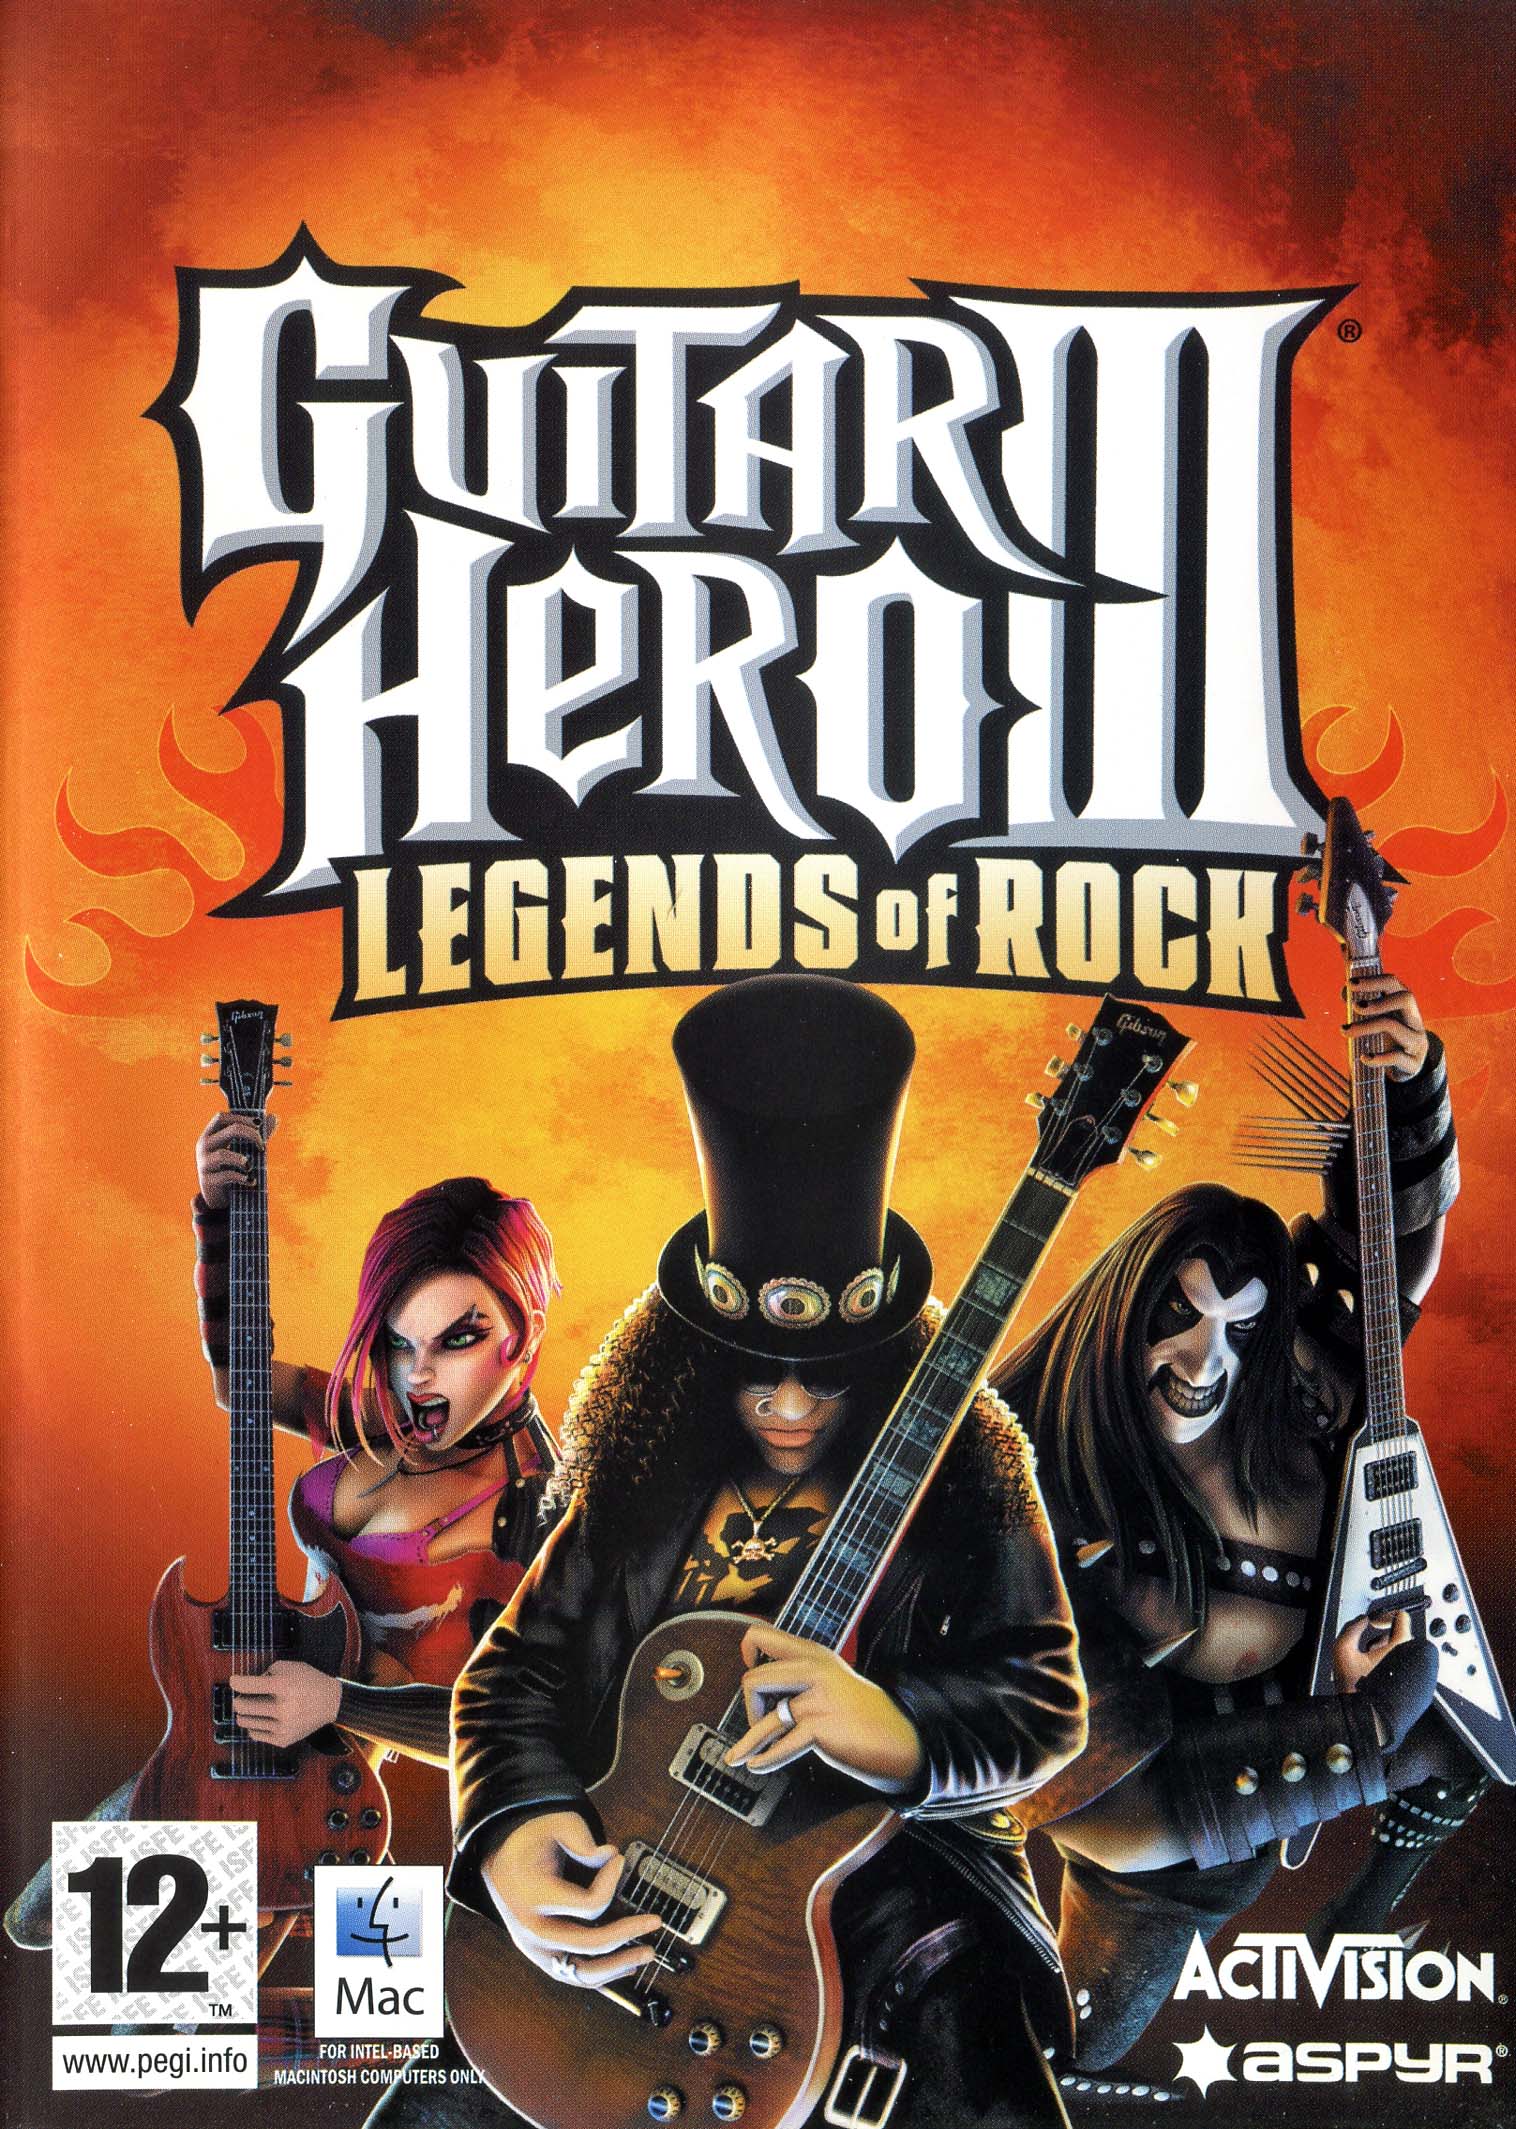 Guitar hero 3 download pc